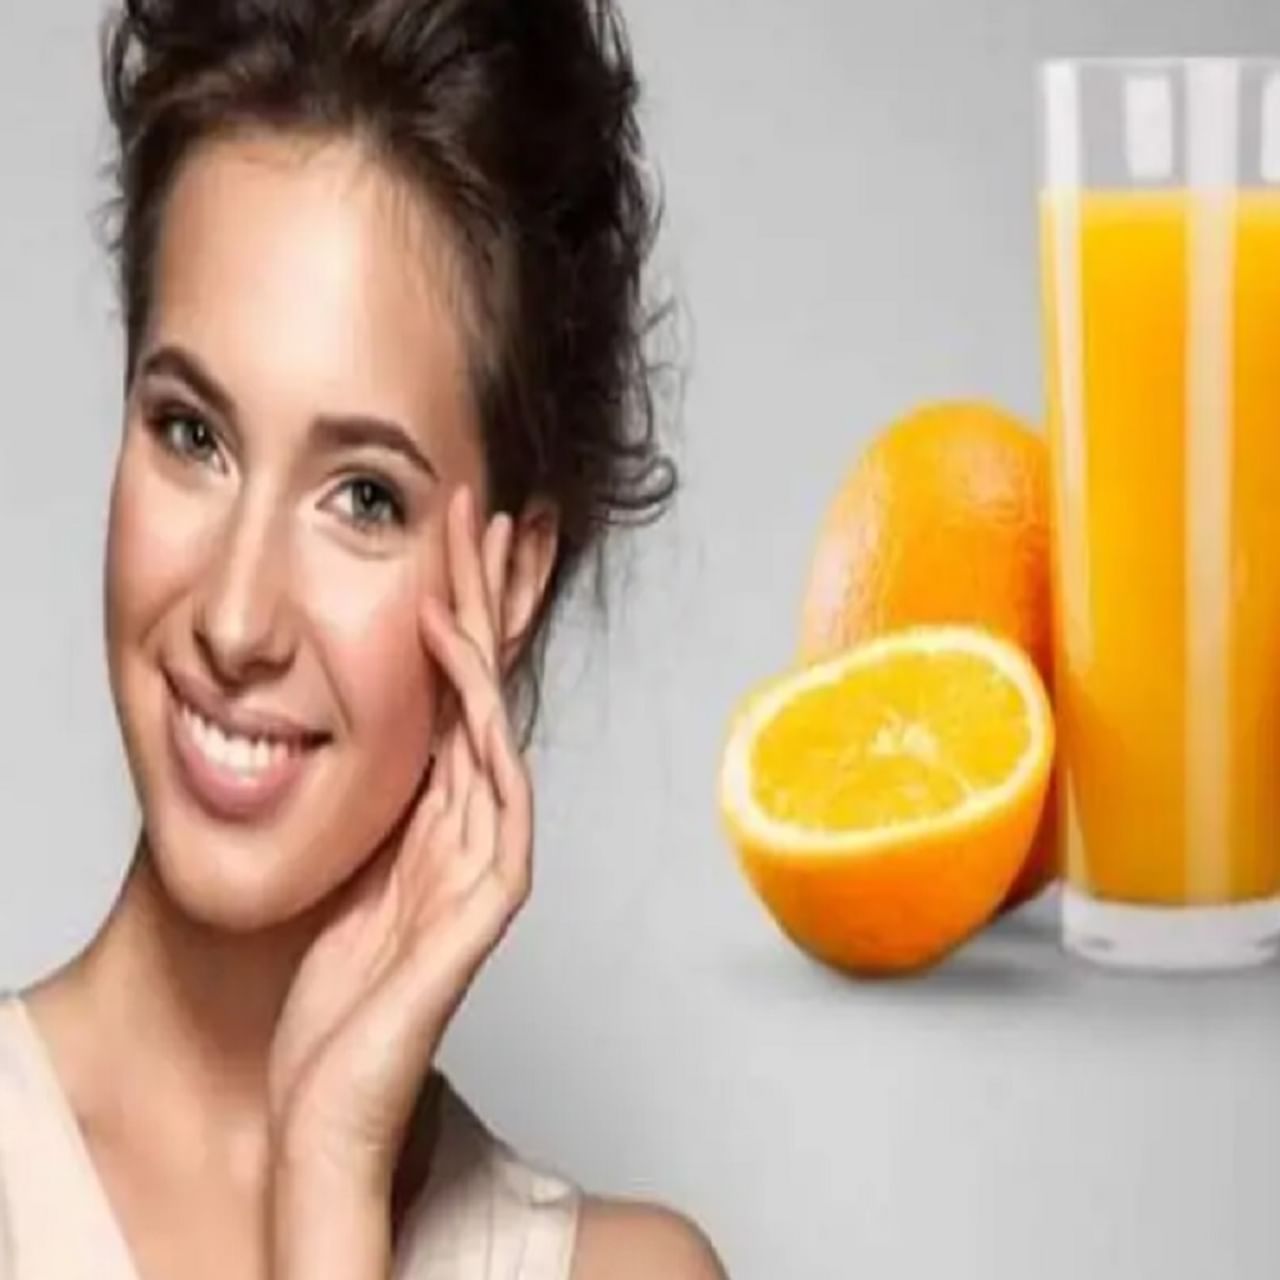 संत्र्याच्या रसामध्ये असलेले व्हिटॅमिन सी त्वचेच्या अनेक समस्या दूर करण्यास मदत करते. तुमच्या त्वचेवर अनेकदा पिंपल्स येतात, मग अशावेळी आपल्या त्वचेवर संत्र्याचा रस लावा. संत्र्याच्या रसामुळे पिंपल्सची समस्या दूर होते. 